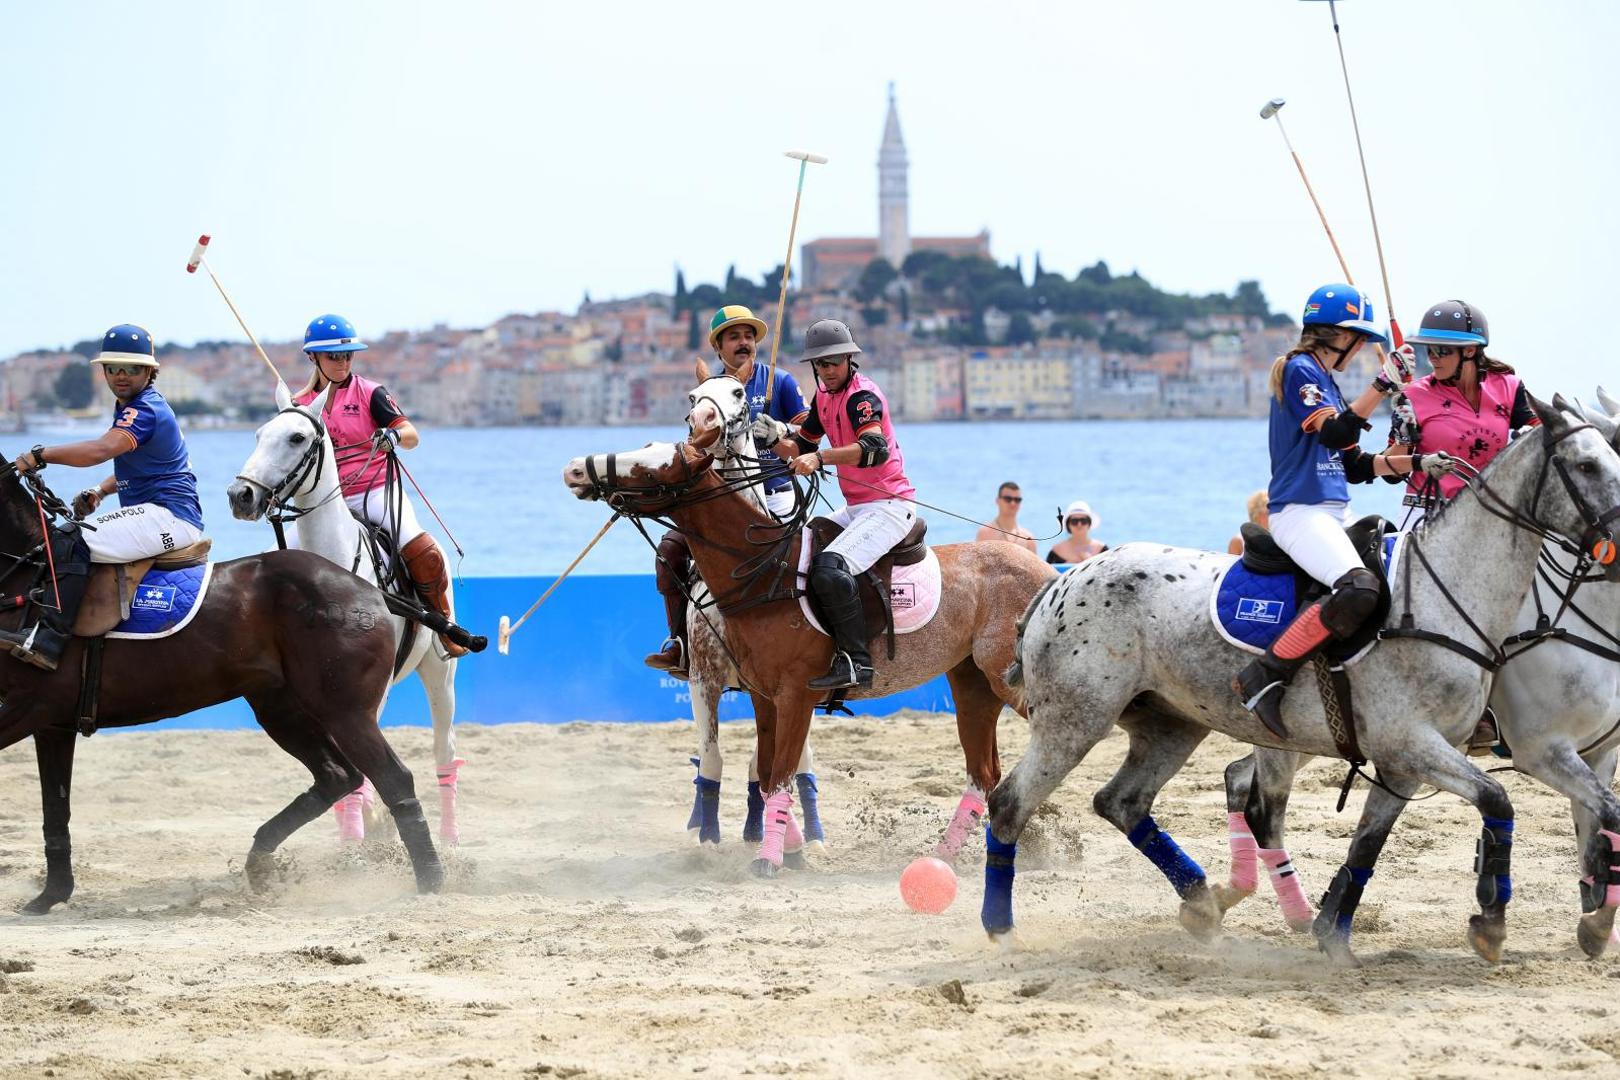 Treće izdanje međunarodnog turnira Rovinj Beach Polo Cup ovog vikenda okupilo je šest međunarodnih timova s više od 60 argentinskih konja, te privuklo oko 18 tisuća gostiju.